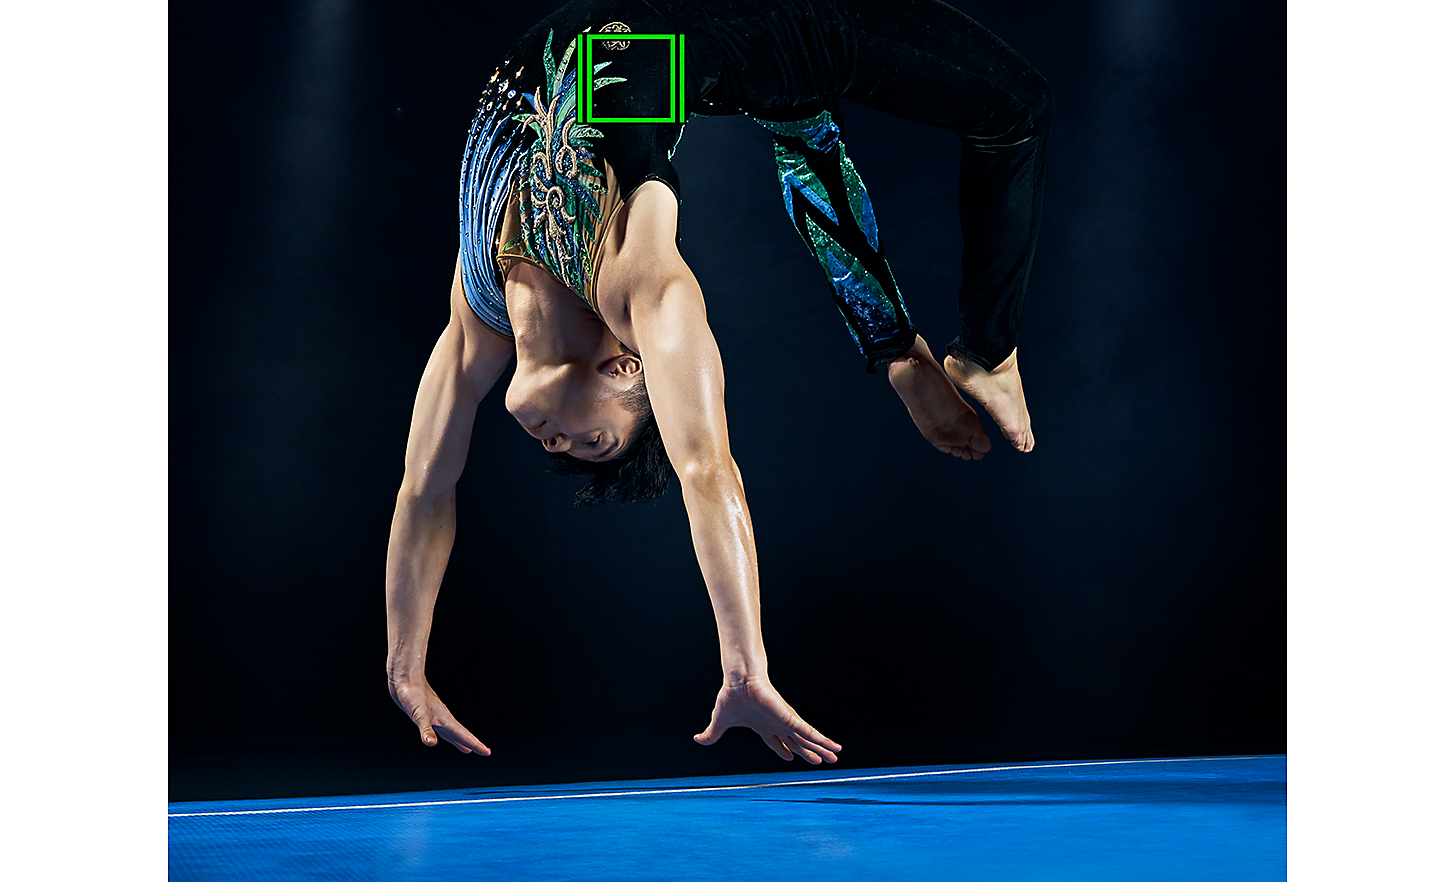 Imagen dinámica de un gimnasta haciendo acrobacias. Un cuadrado verde representa el rastreo en tiempo real